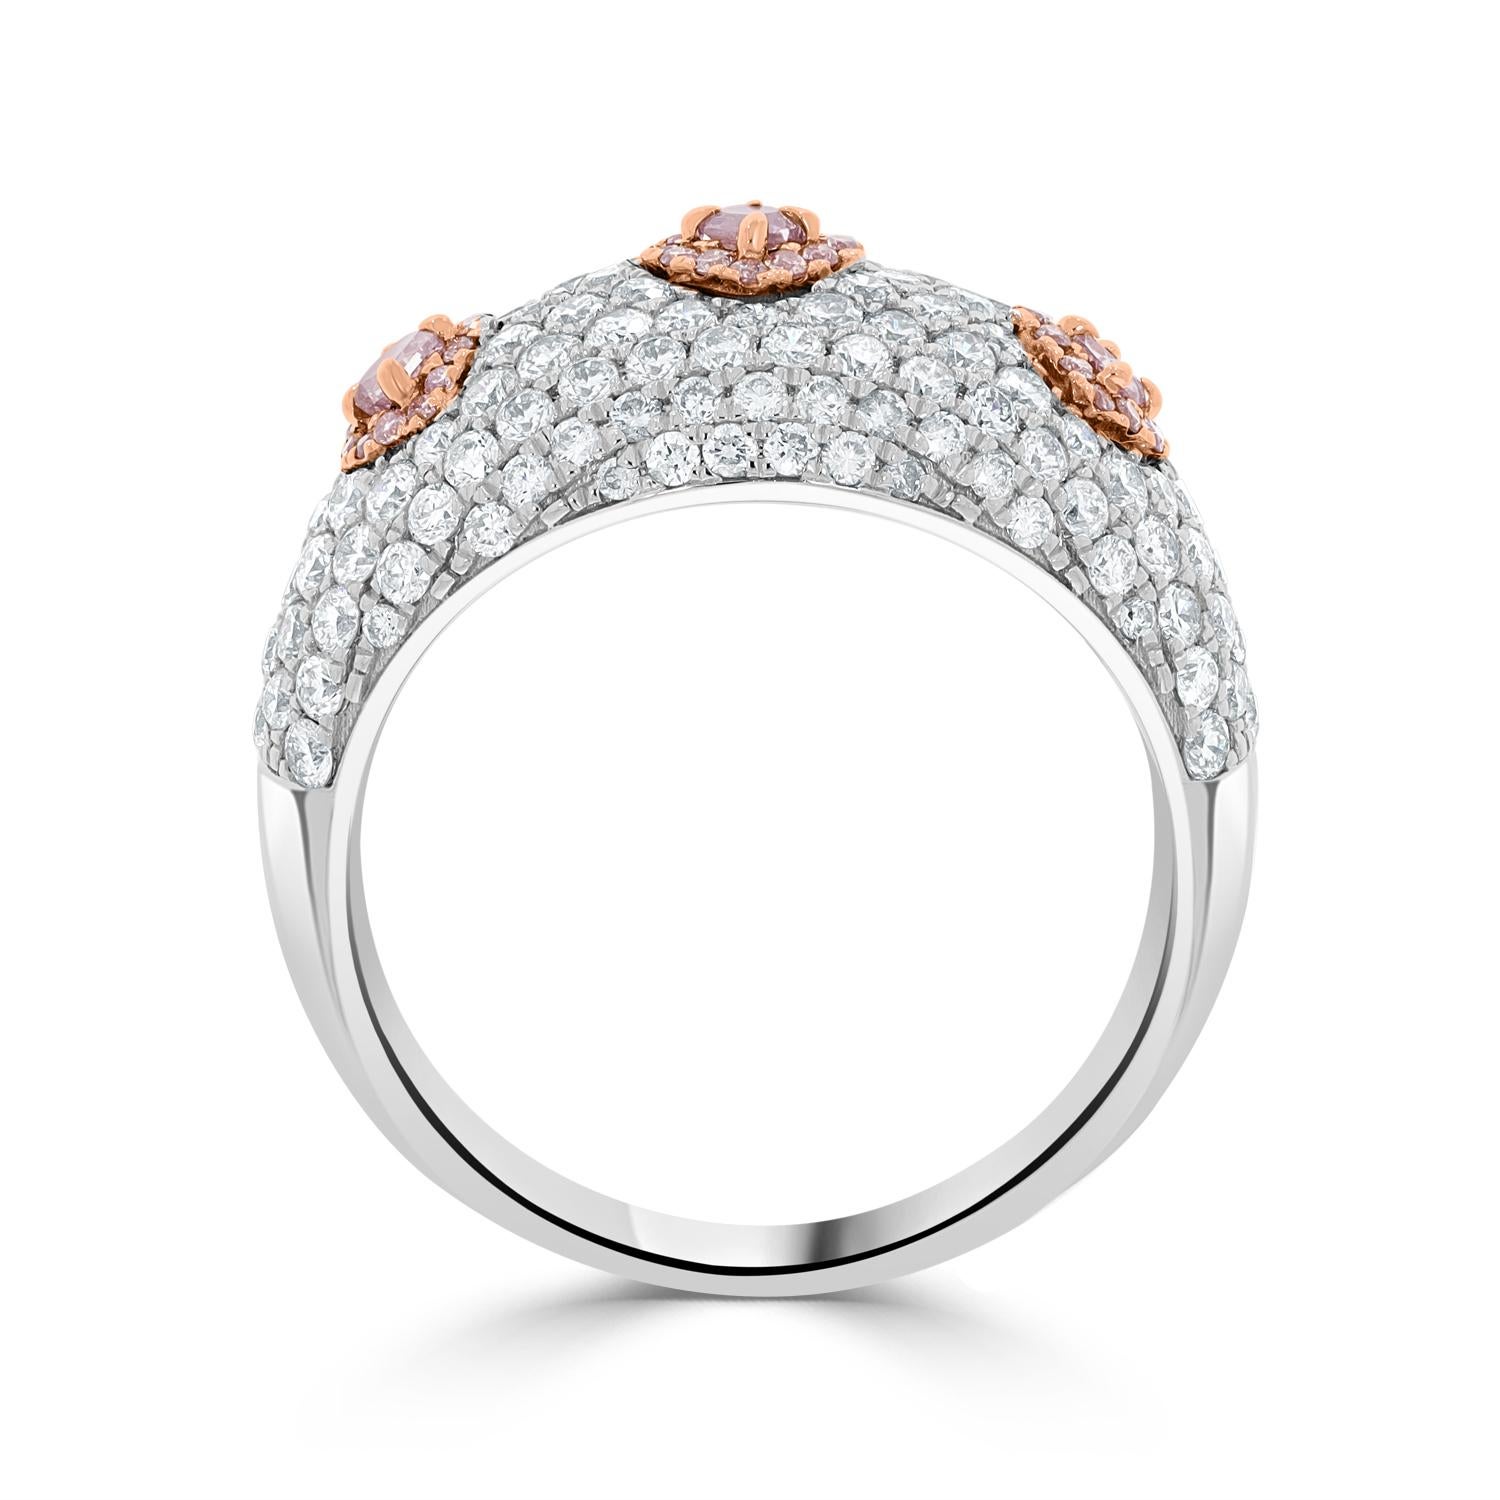 Cette bague en diamant rose sertie de diamants en or bicolore 14K est un bijou luxueux qui respire l'élégance et la sophistication. Le superbe diamant rose au centre de la bague est une pierre précieuse et rare qui ne manquera pas d'attirer